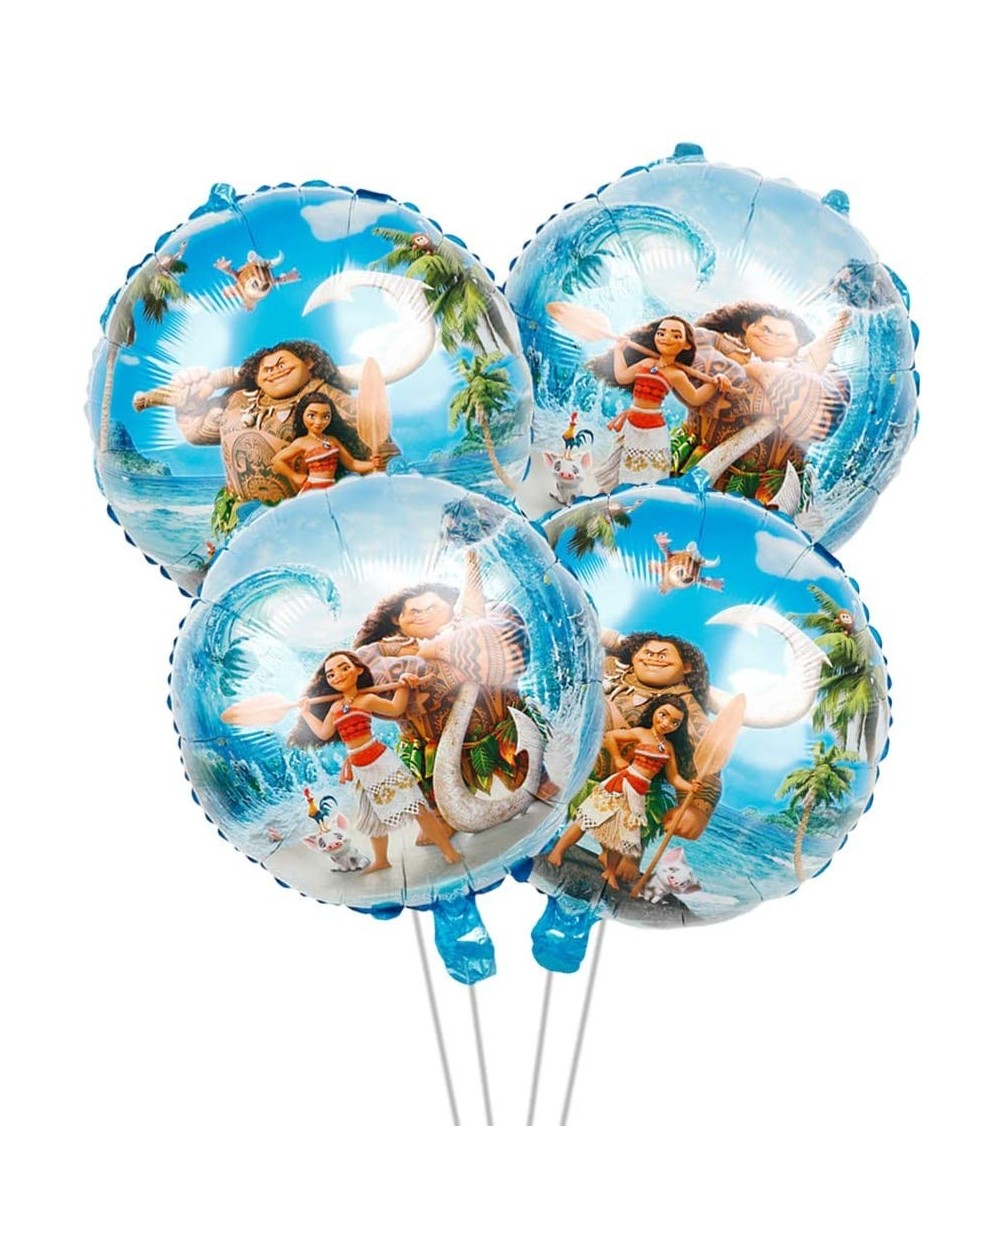 Balloons 4pcs Moana Balloon- Moana party decoration - C7199ONANG8 $9.37